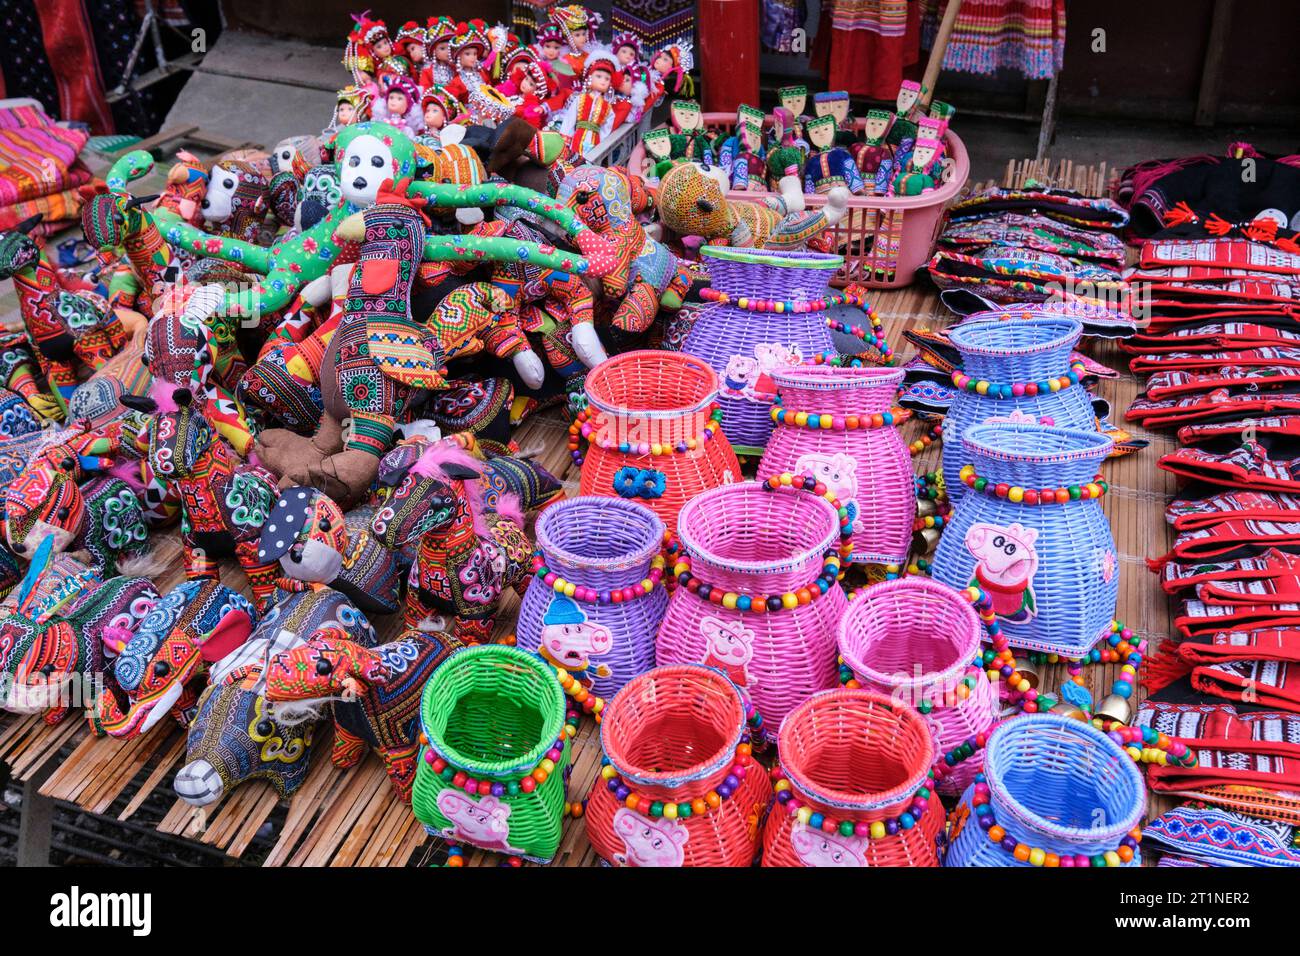 Bac Ha, Vietnam. Stuffed Dolls, Plastic Baskets in the Saturday Market. Stock Photo